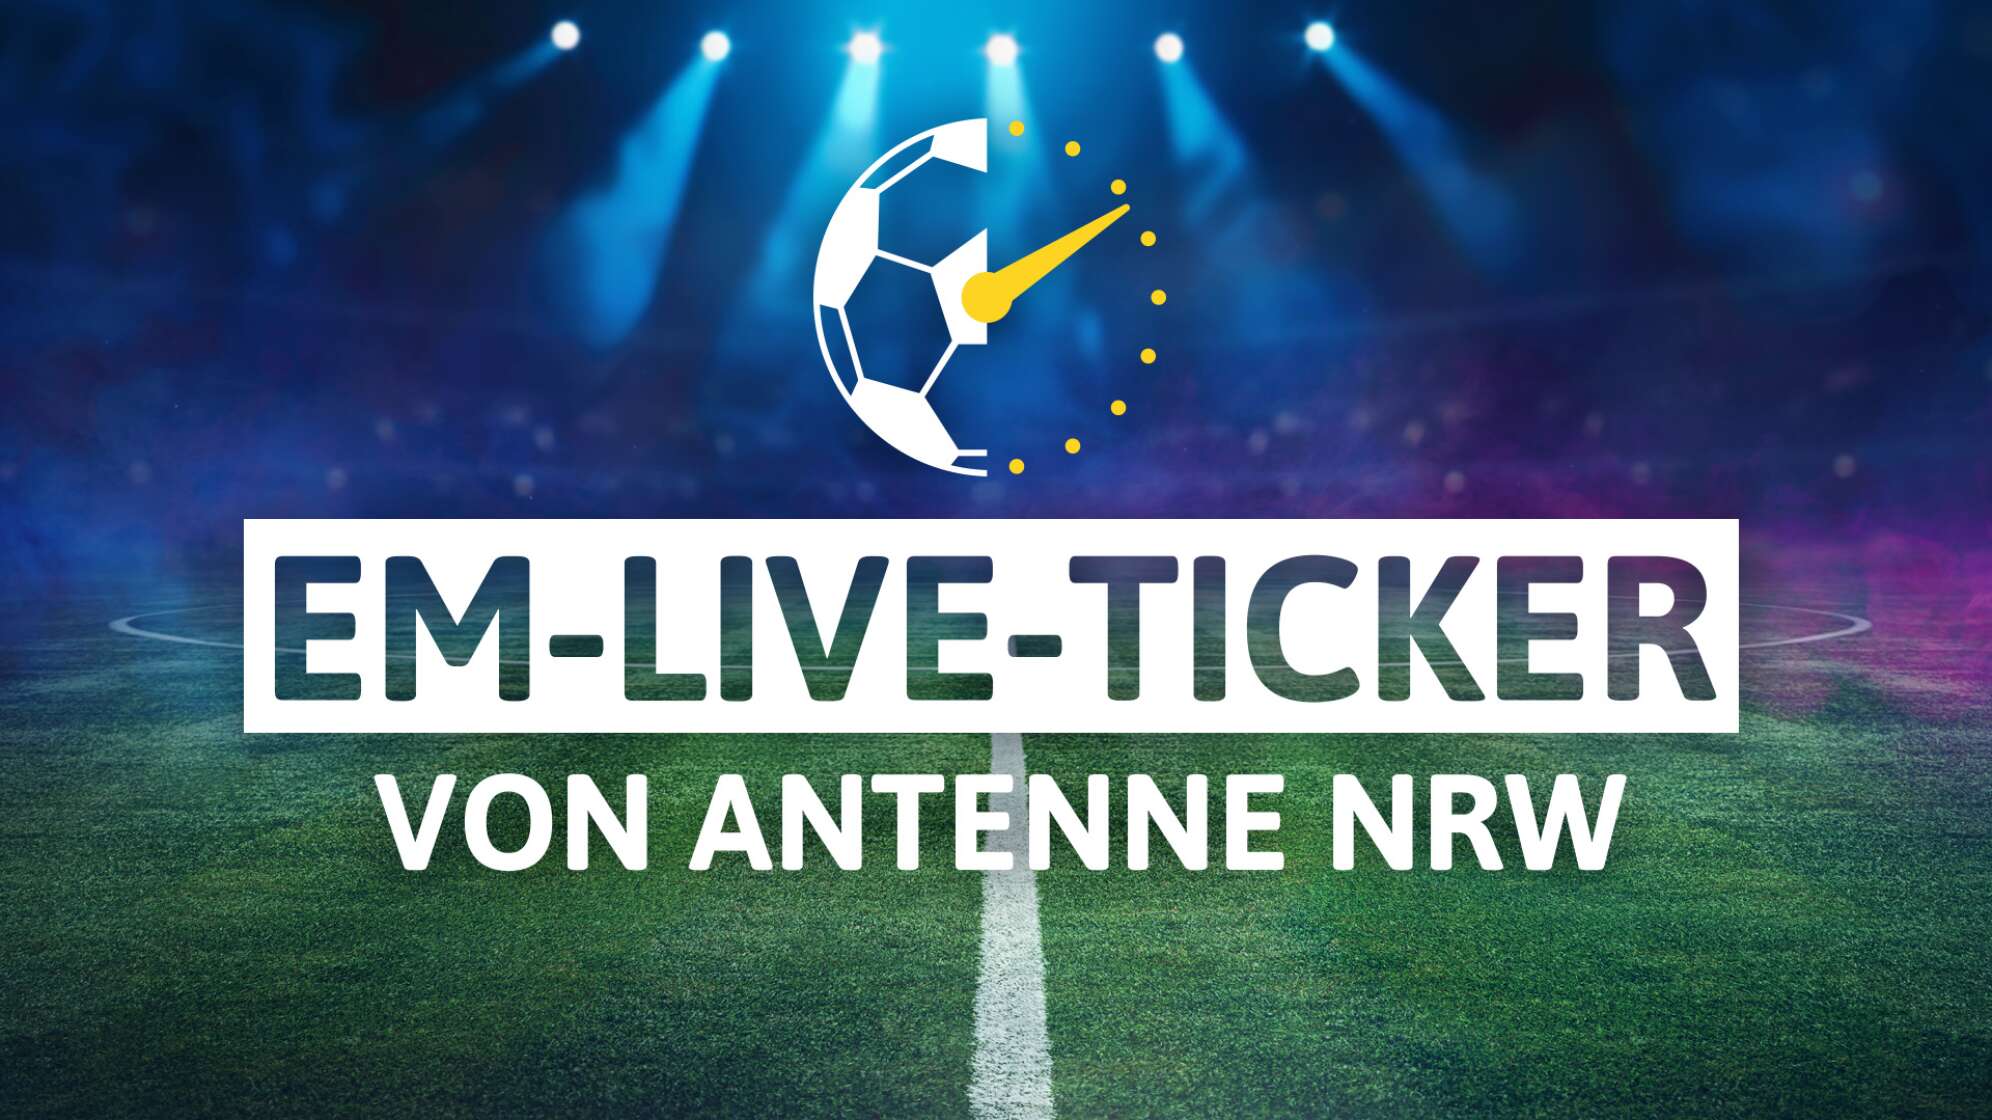 EM Live-Ticker von ANTENNE NRW